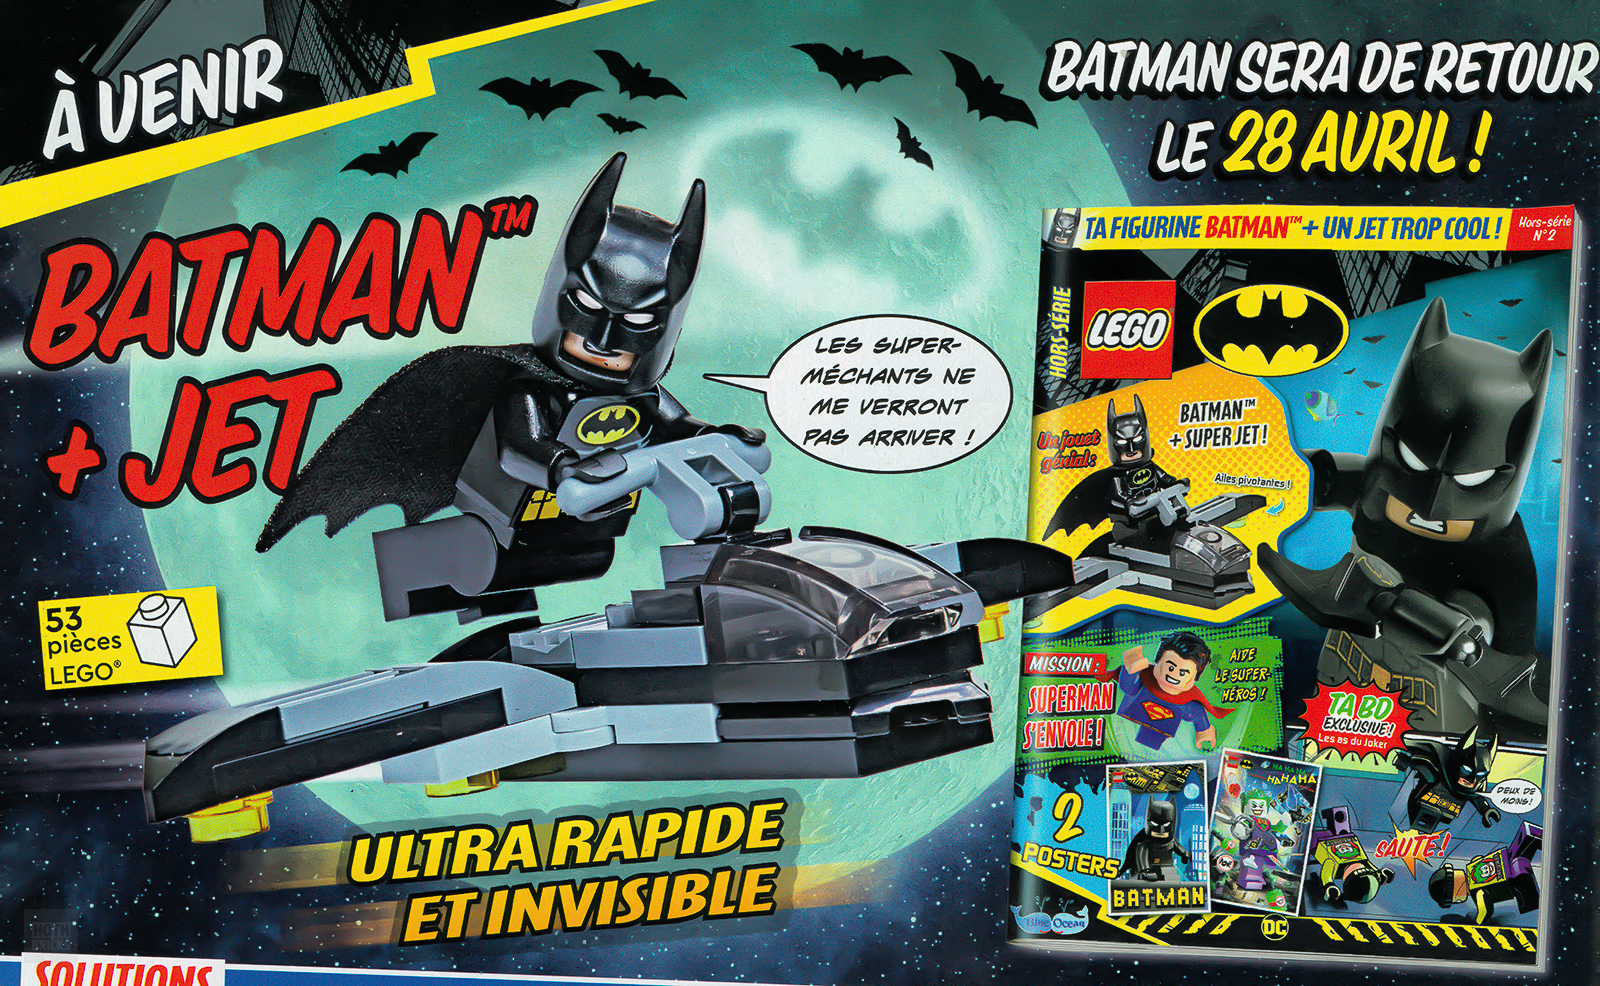 Trên sạp báo: Số tháng 2023 năm XNUMX của tạp chí LEGO Batman chính thức